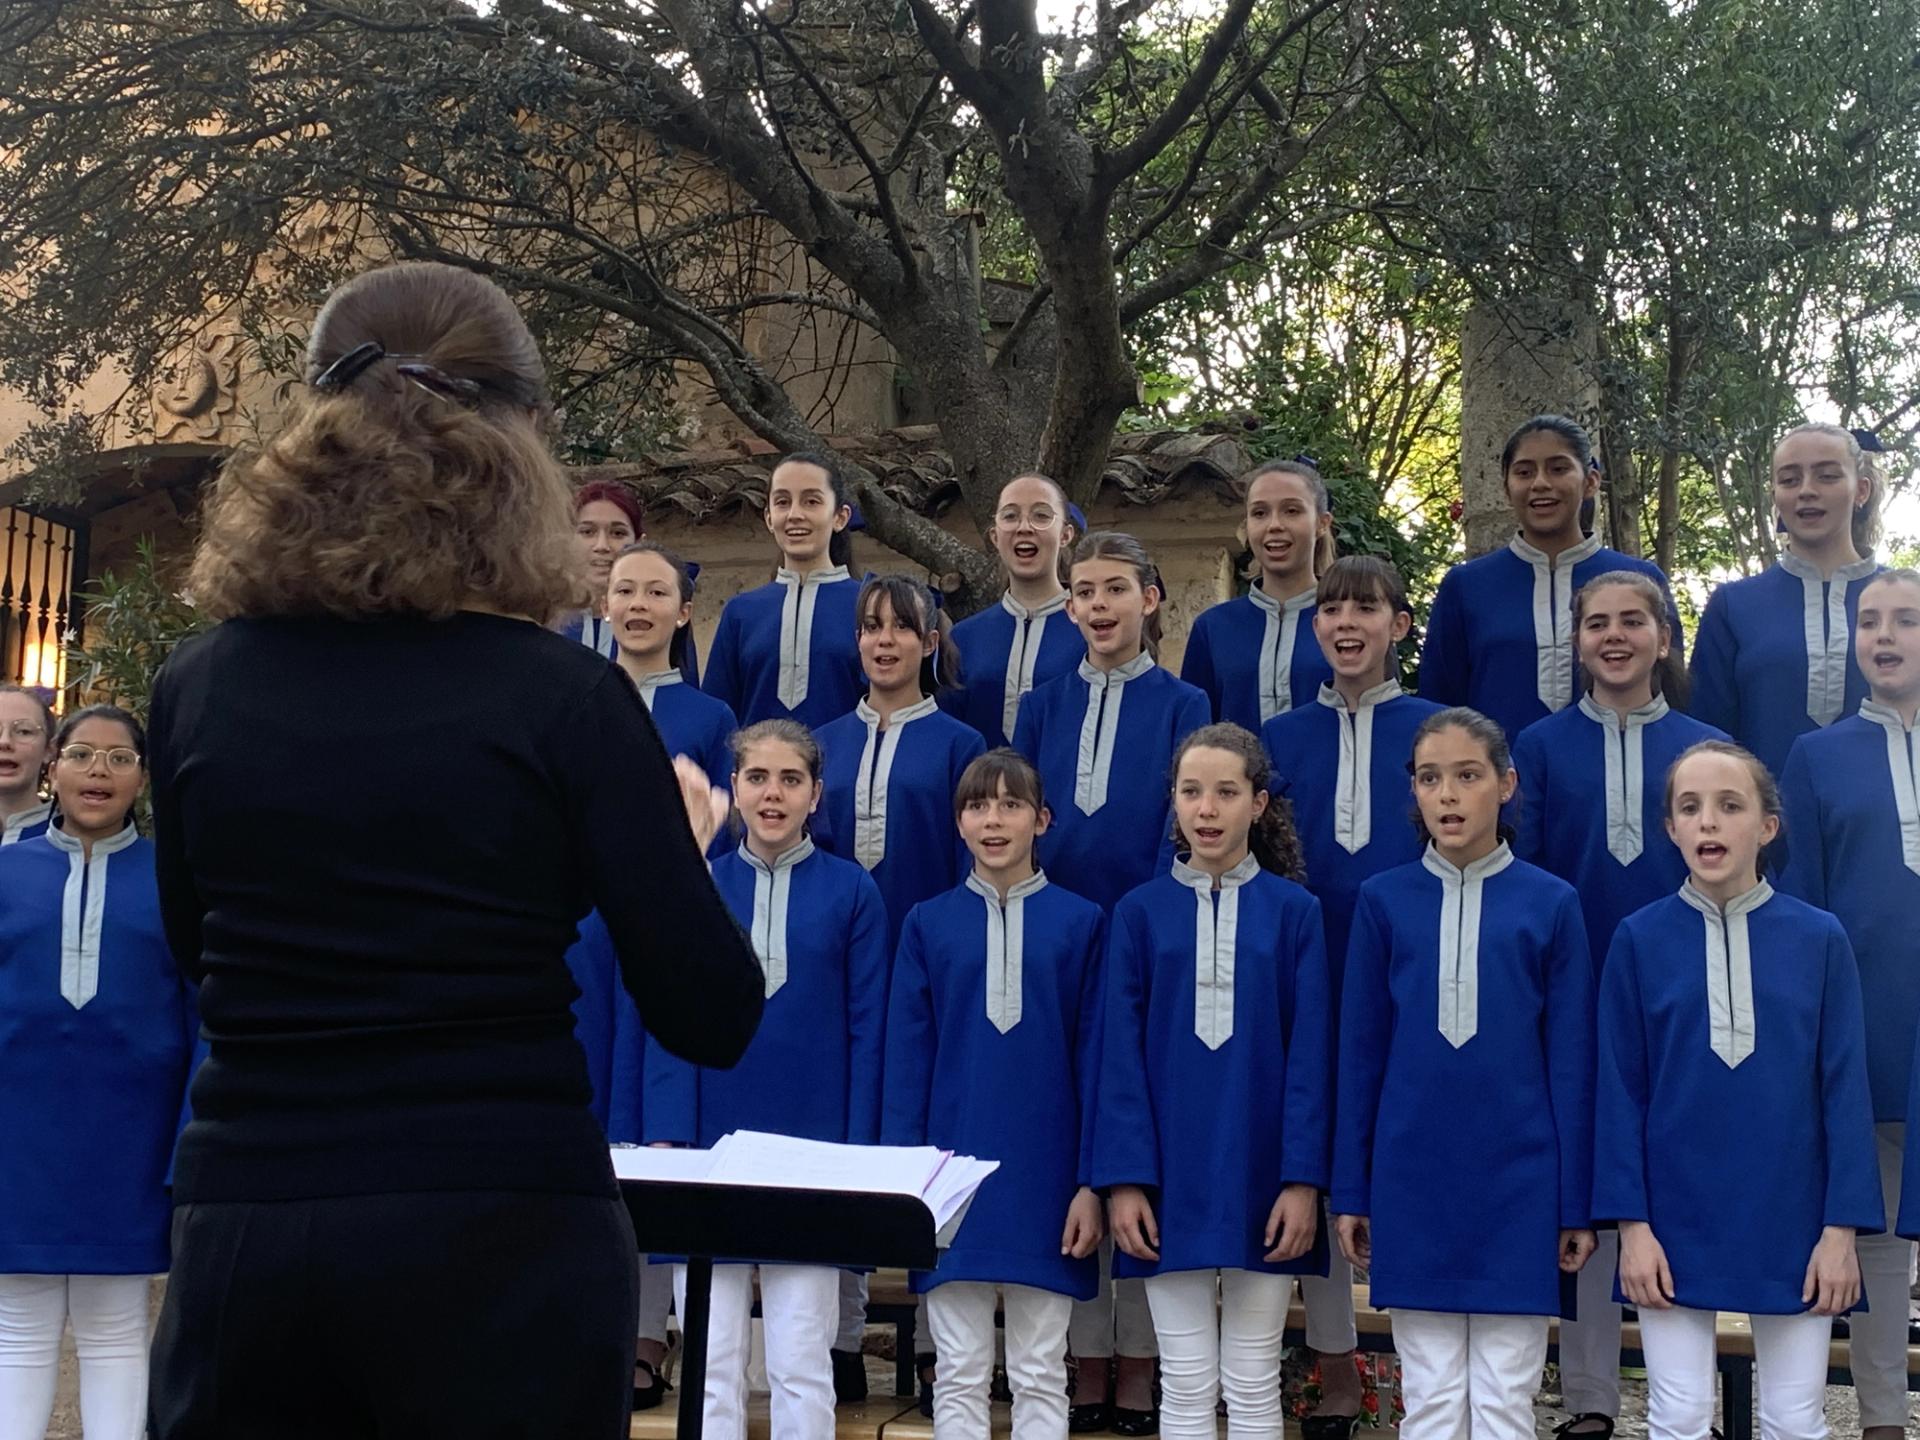 La Escolanía de Segovia despliega su talento joven en el jardín de La Mudarra